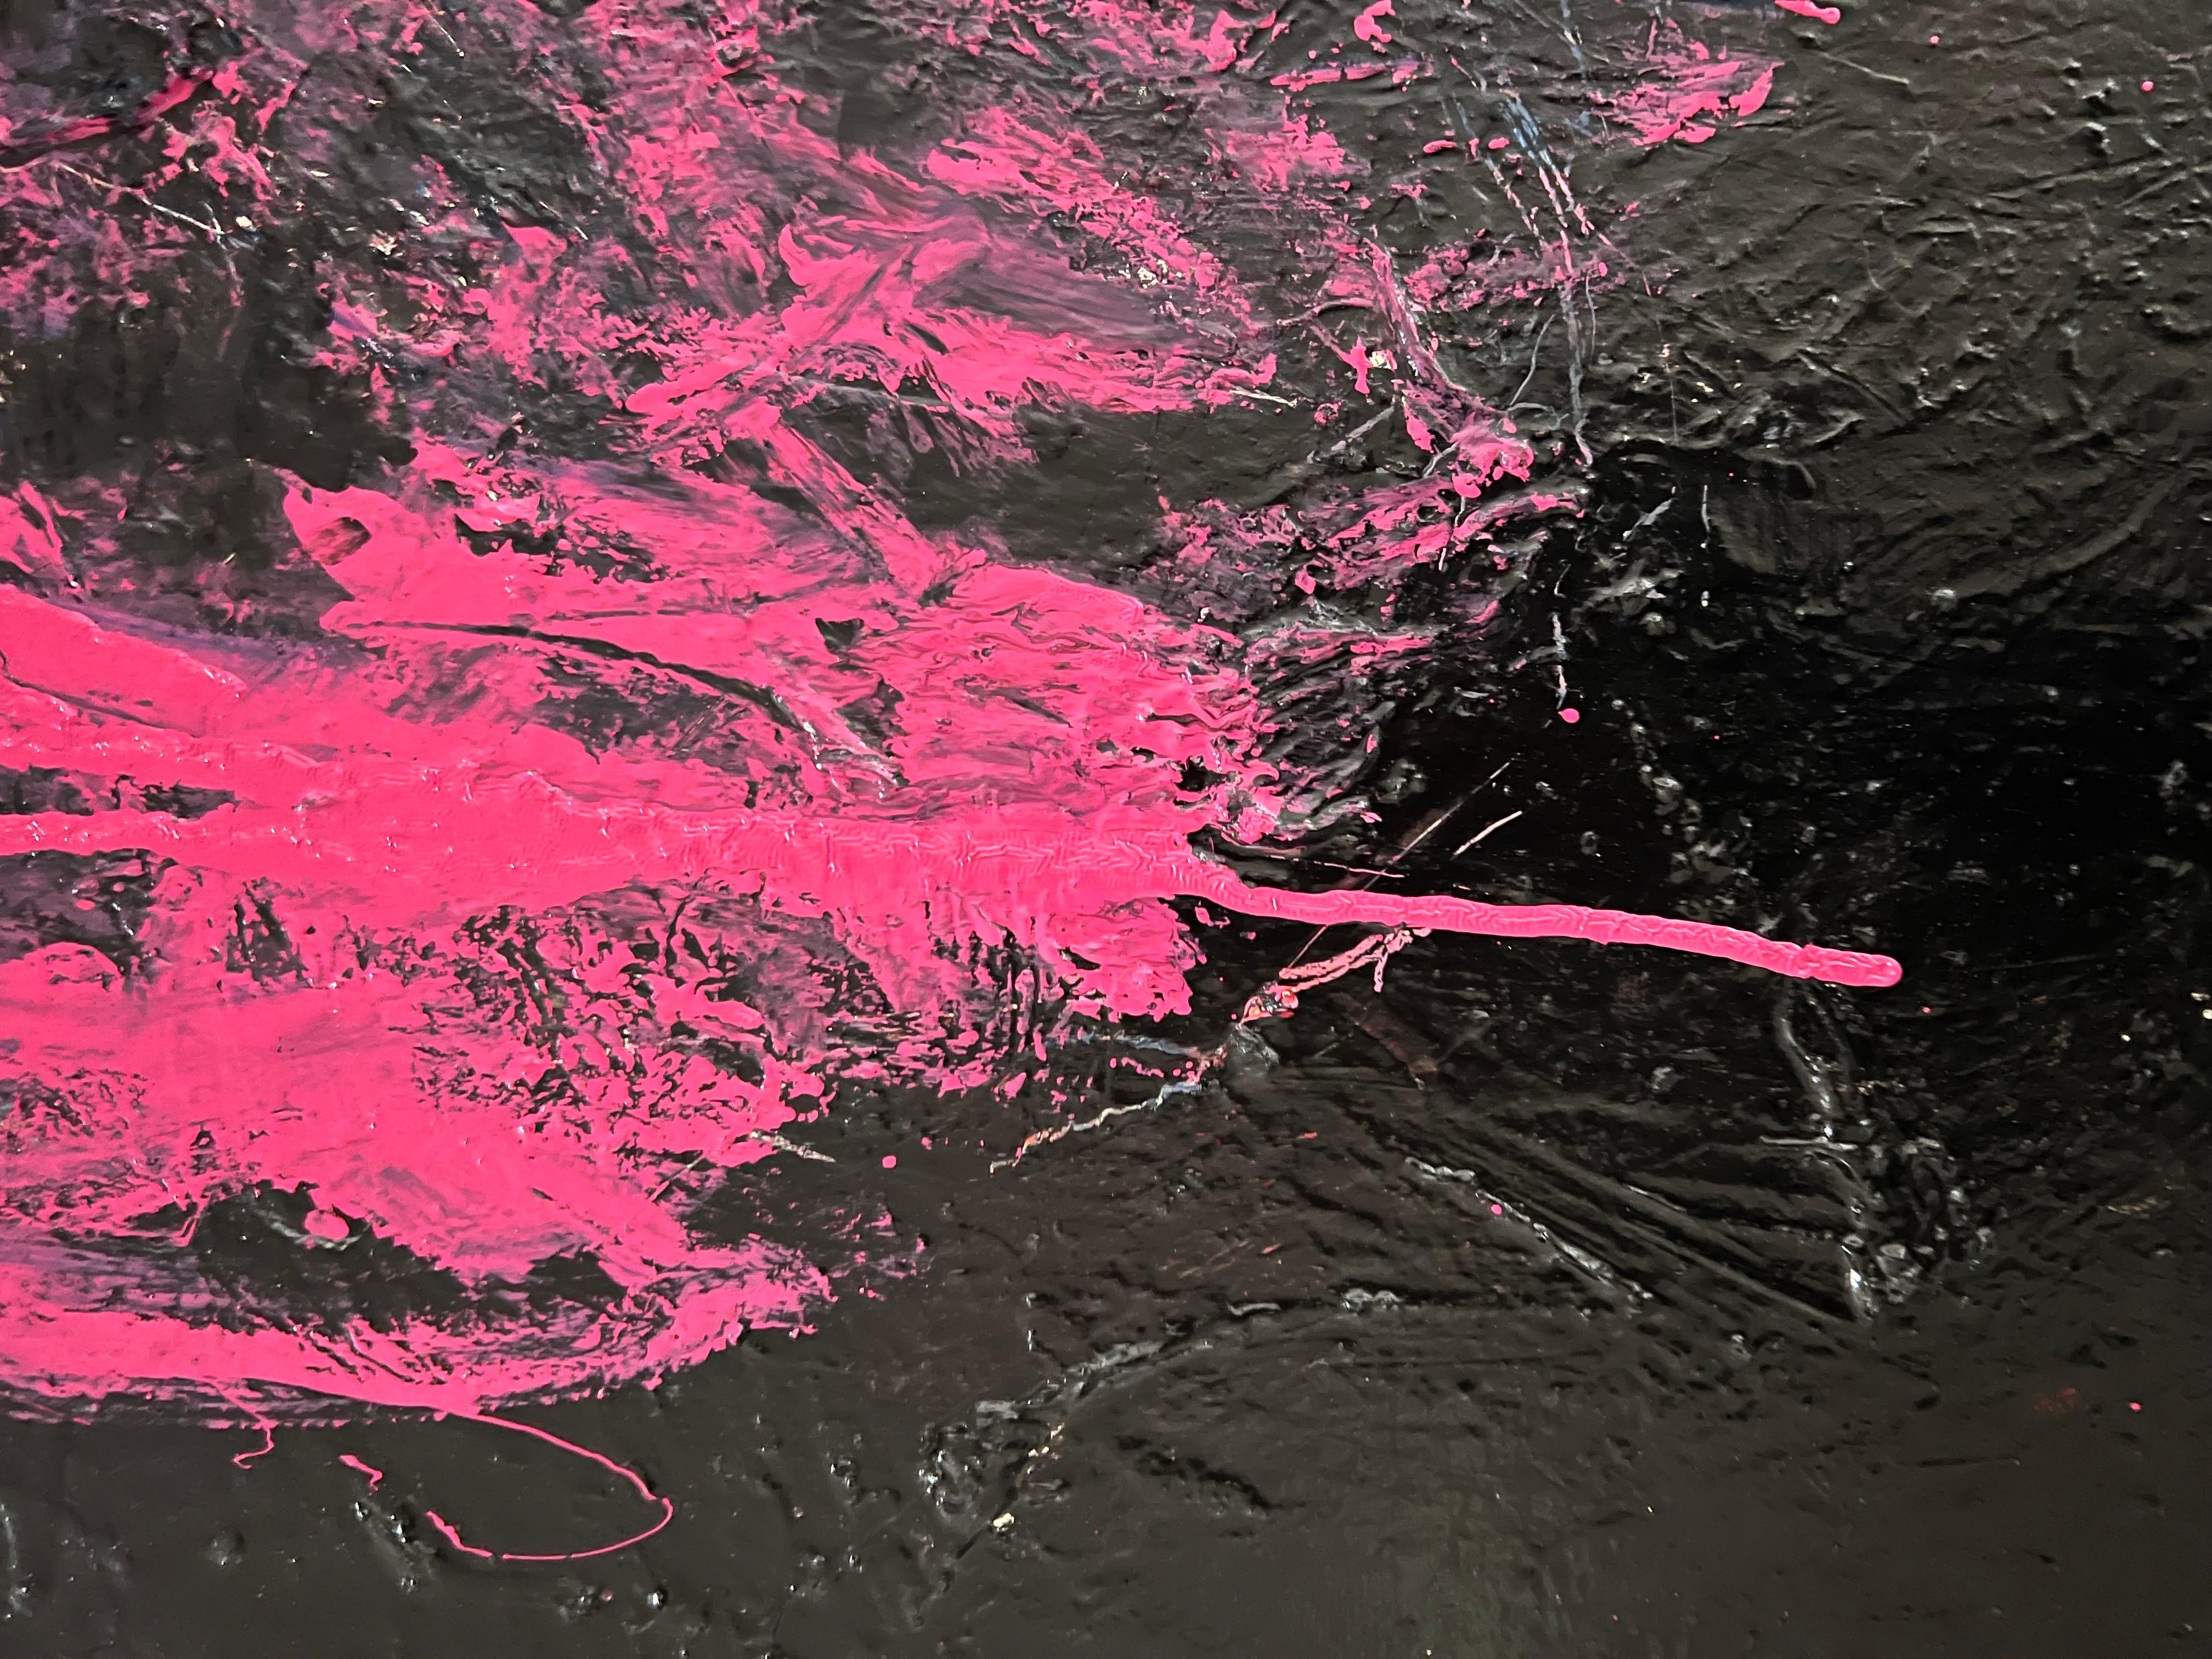 Une grande peinture à l'huile rose sur noir de l'artiste Norman Liebman. Signé au dos. Non encadré.

Norman Liebman : Peintre expressionniste abstrait, né en 1931, était une personne remarquable dont la vie était une tapisserie de deux passions